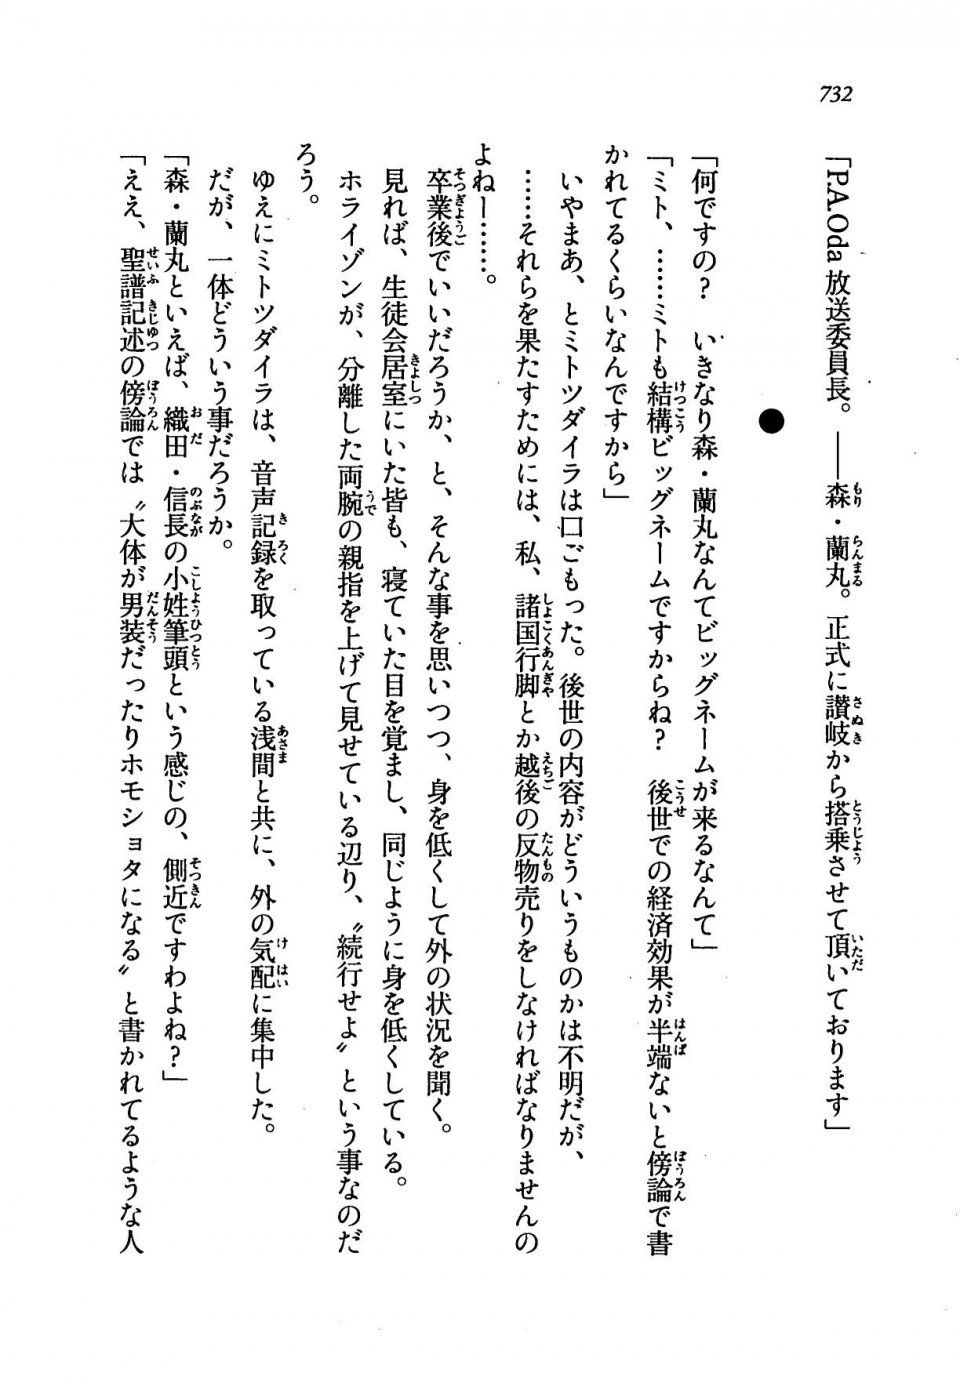 Kyoukai Senjou no Horizon LN Vol 19(8A) - Photo #732